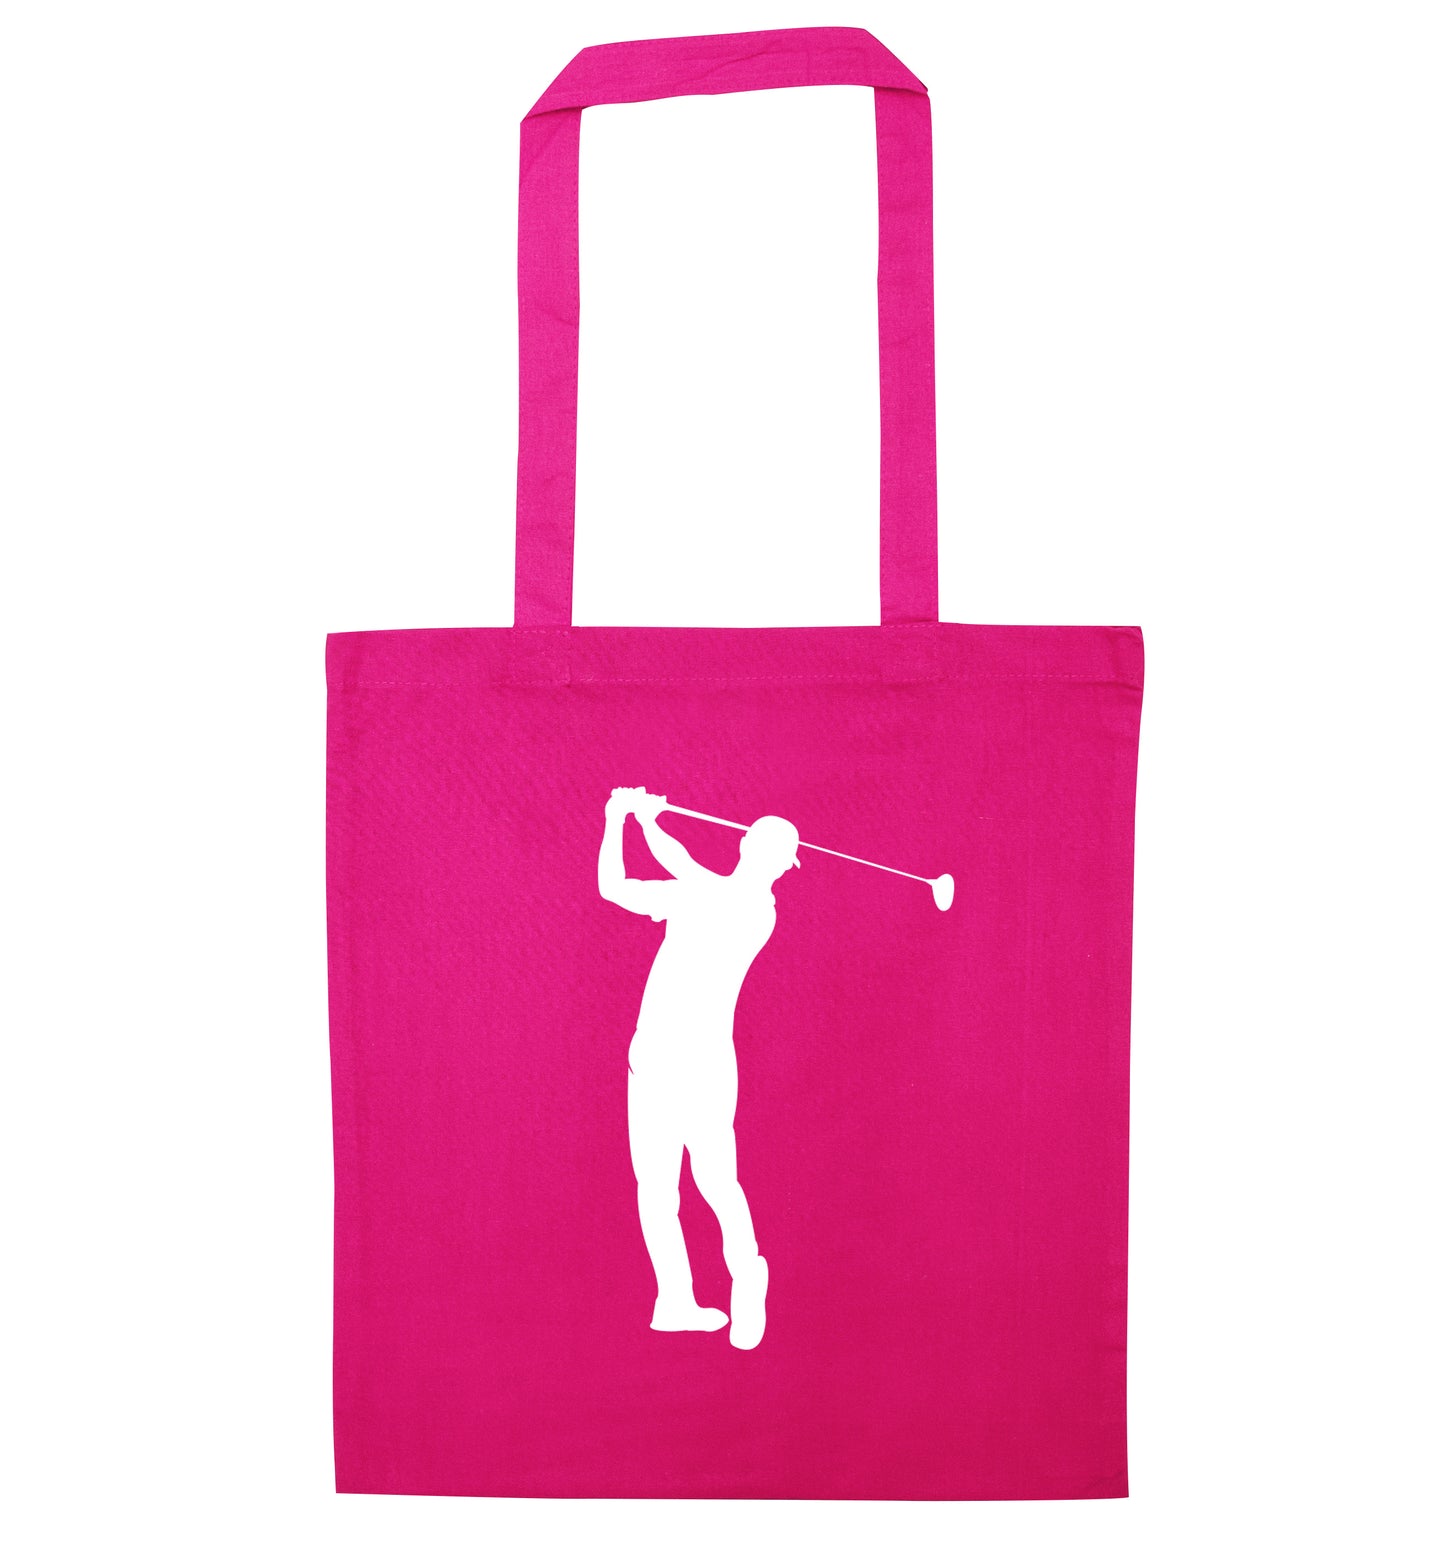 Golfer Illustration pink tote bag